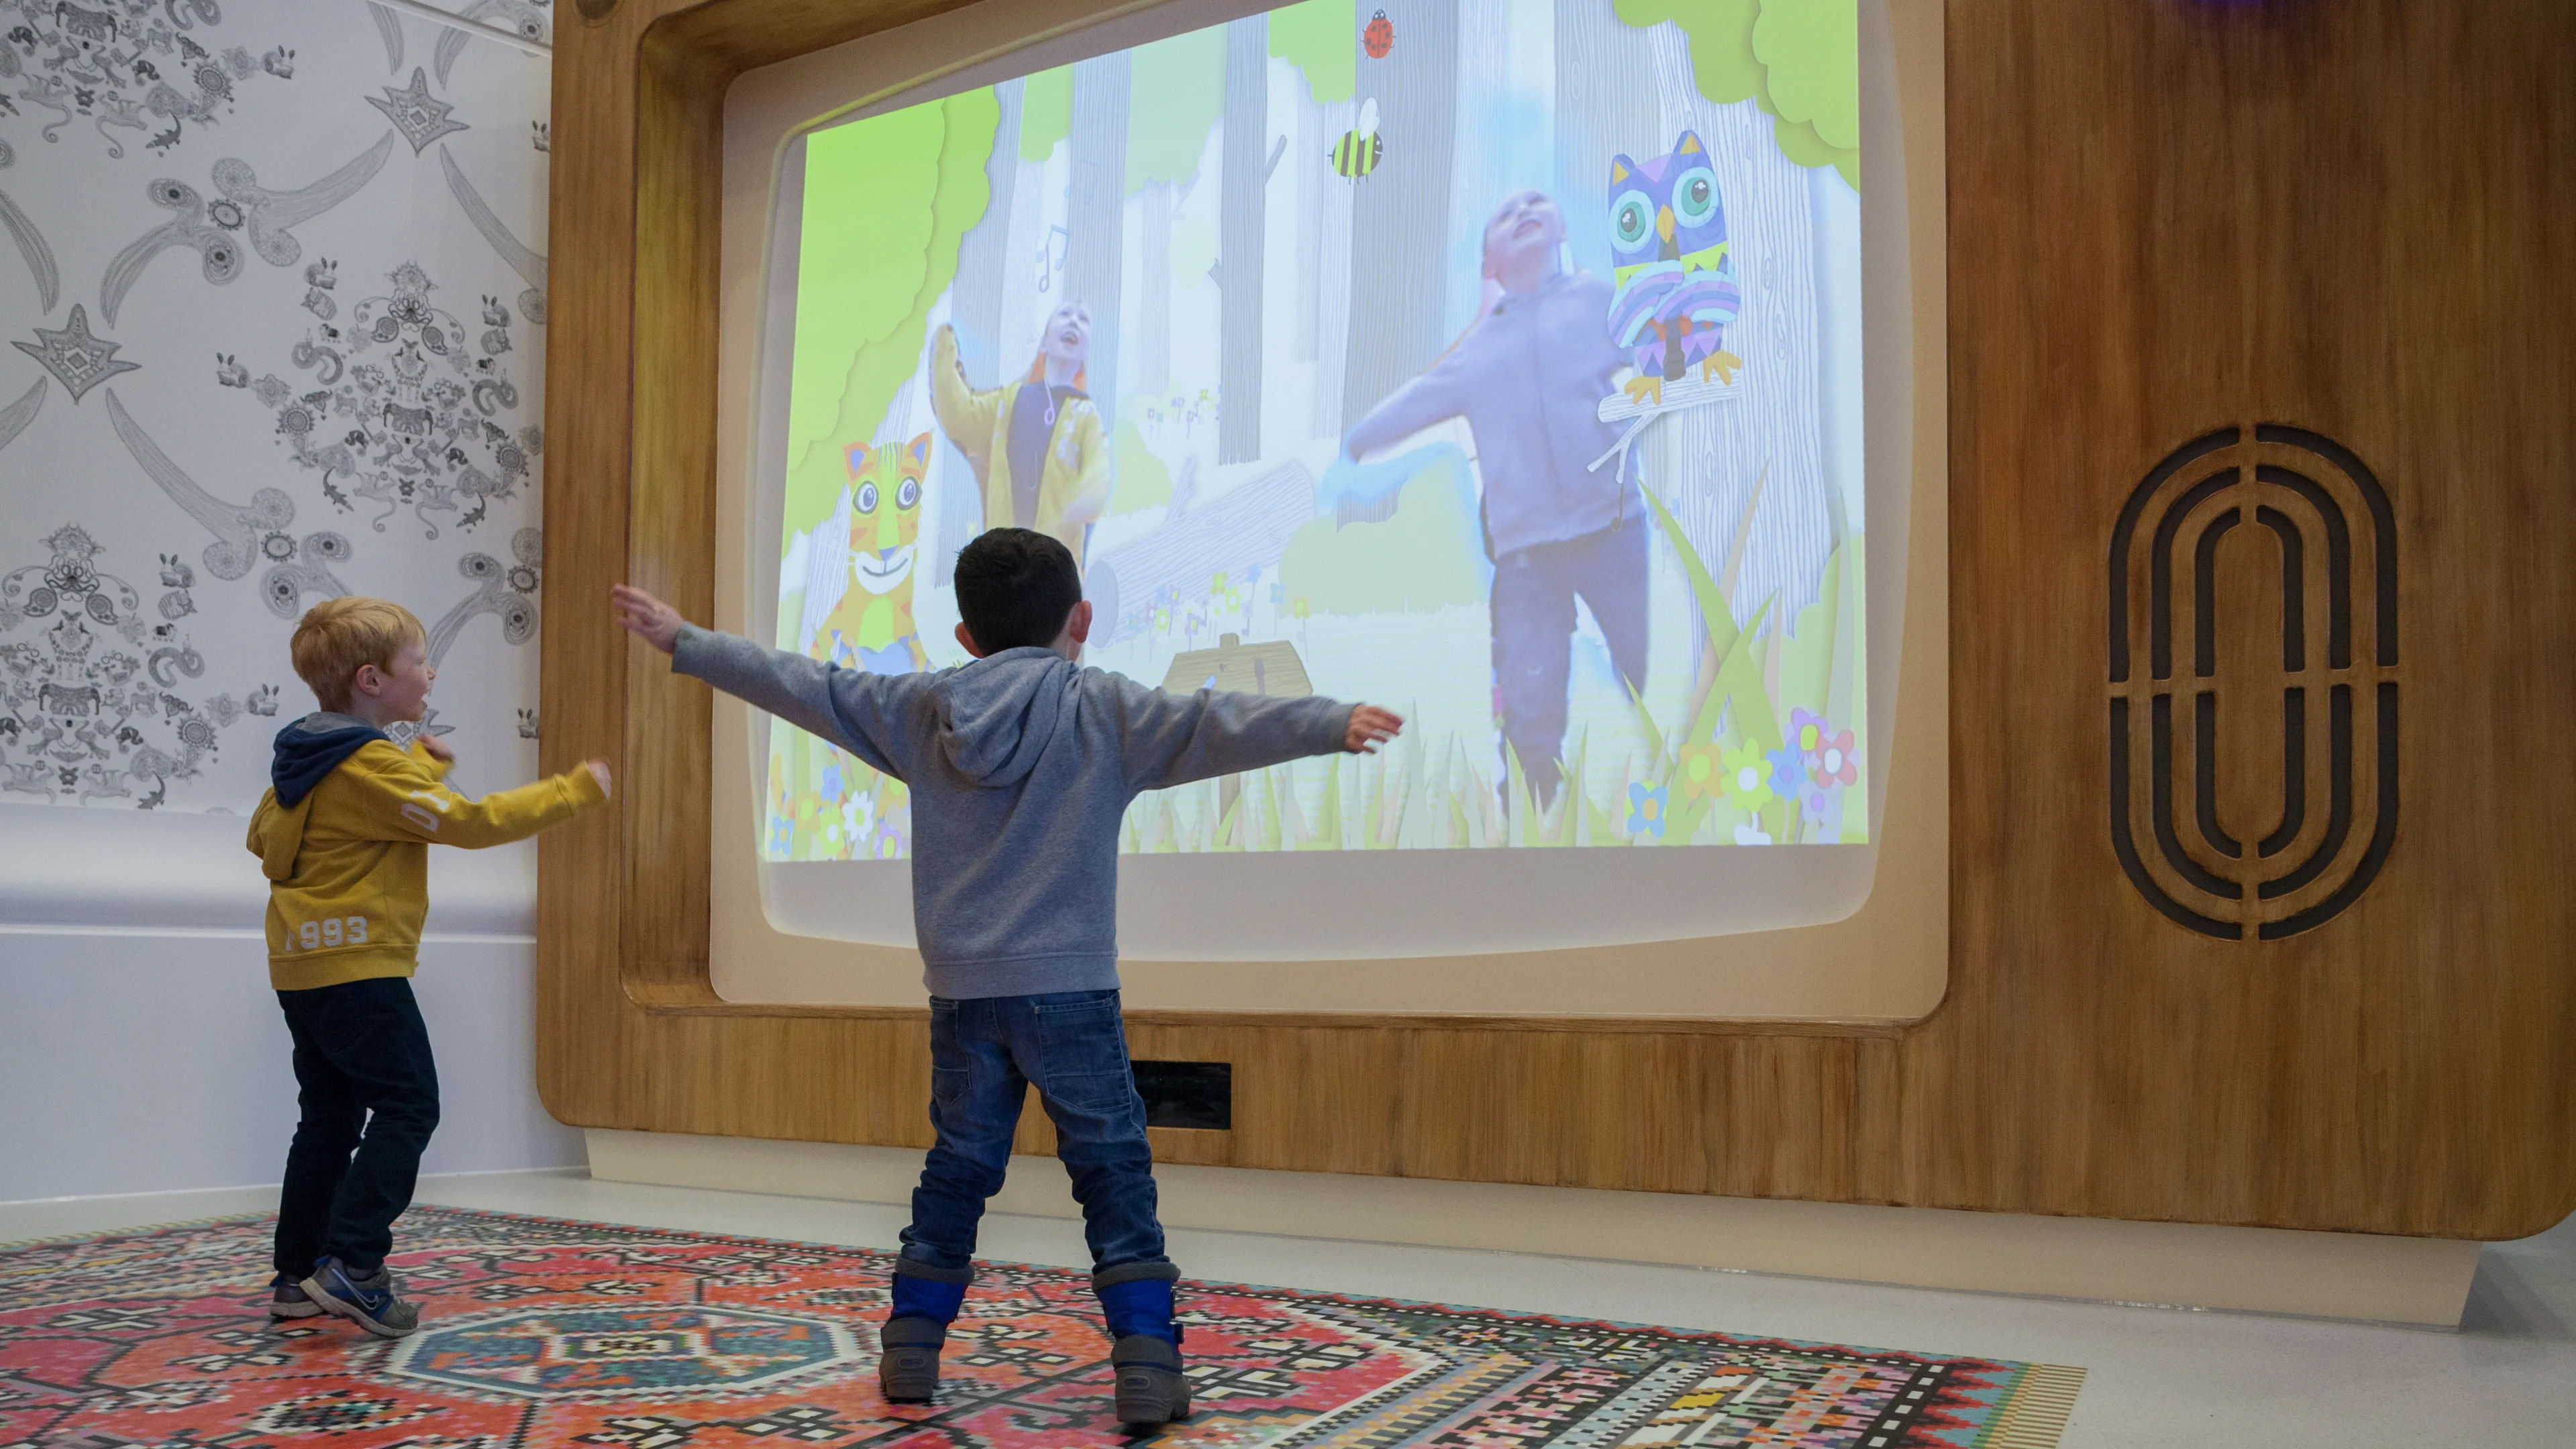 Интерактивная студия. Интерактивная стена для детей. Интерактивные стены в детском саду. Игровая интерактивная стена для детей. Интерактивный экран для детей.